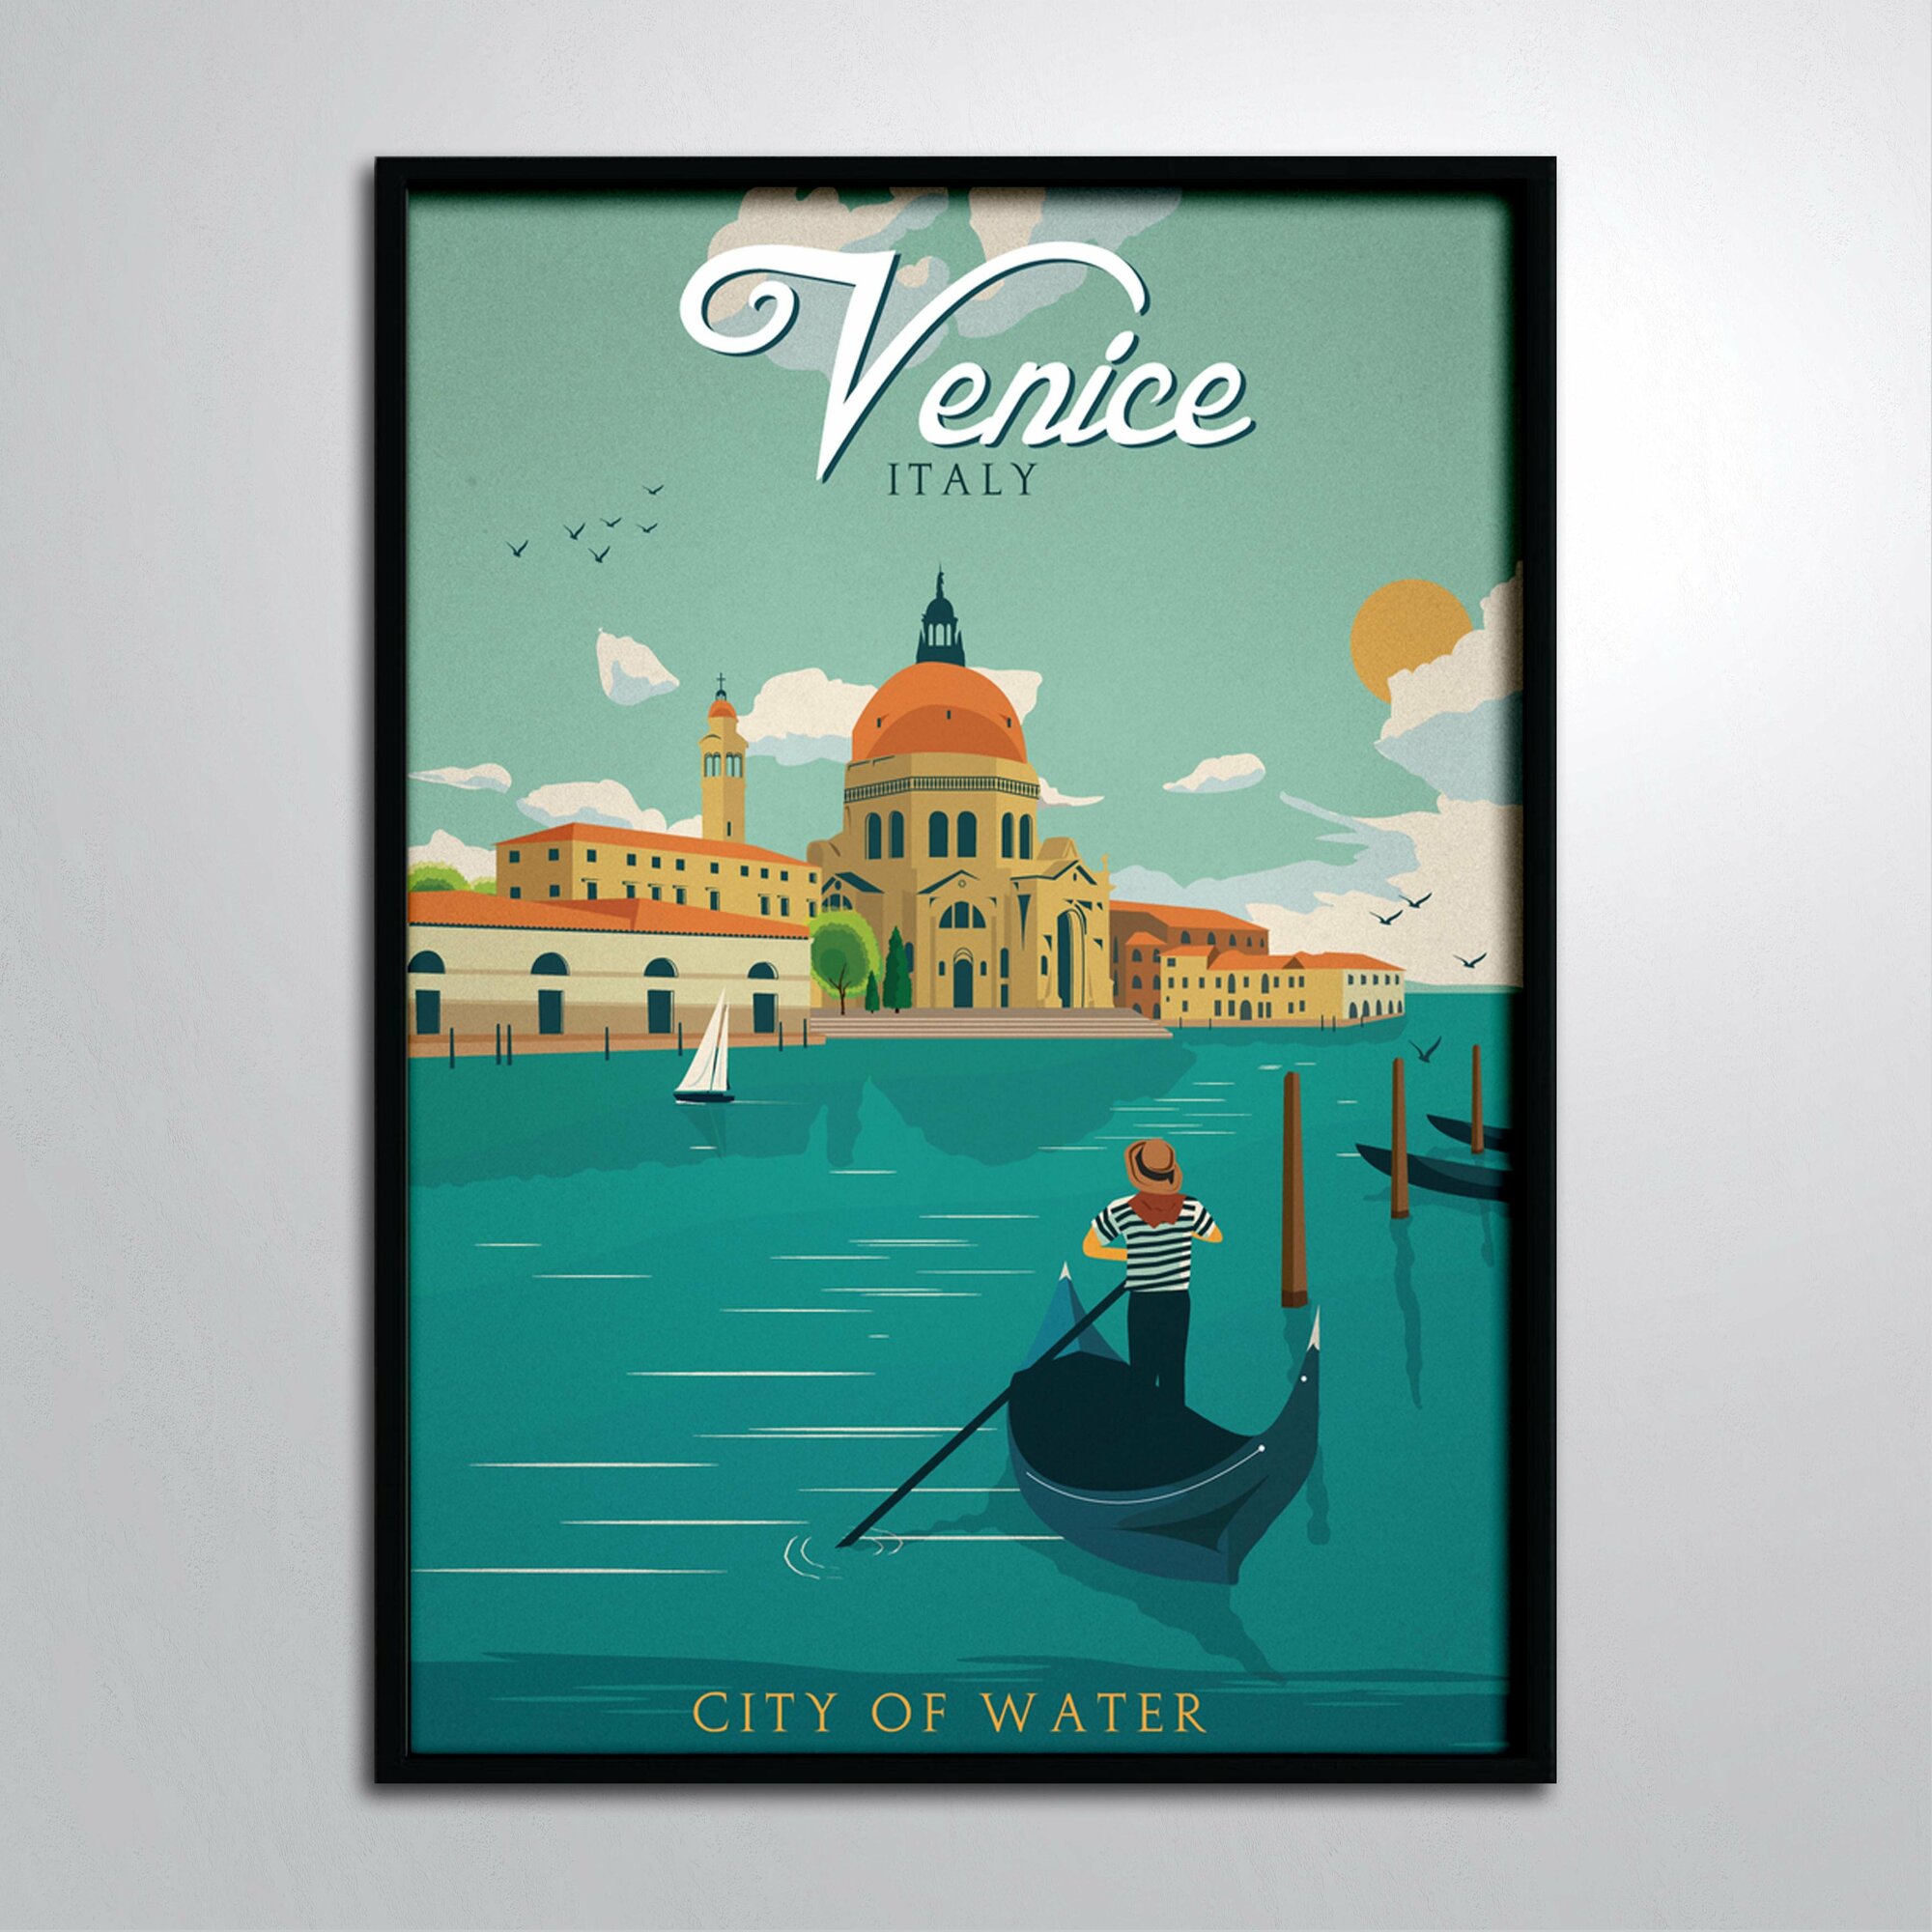 Постер в раме/Постер для интерьера/Винтажный плакат Венеция Италия Venice Italy City of water